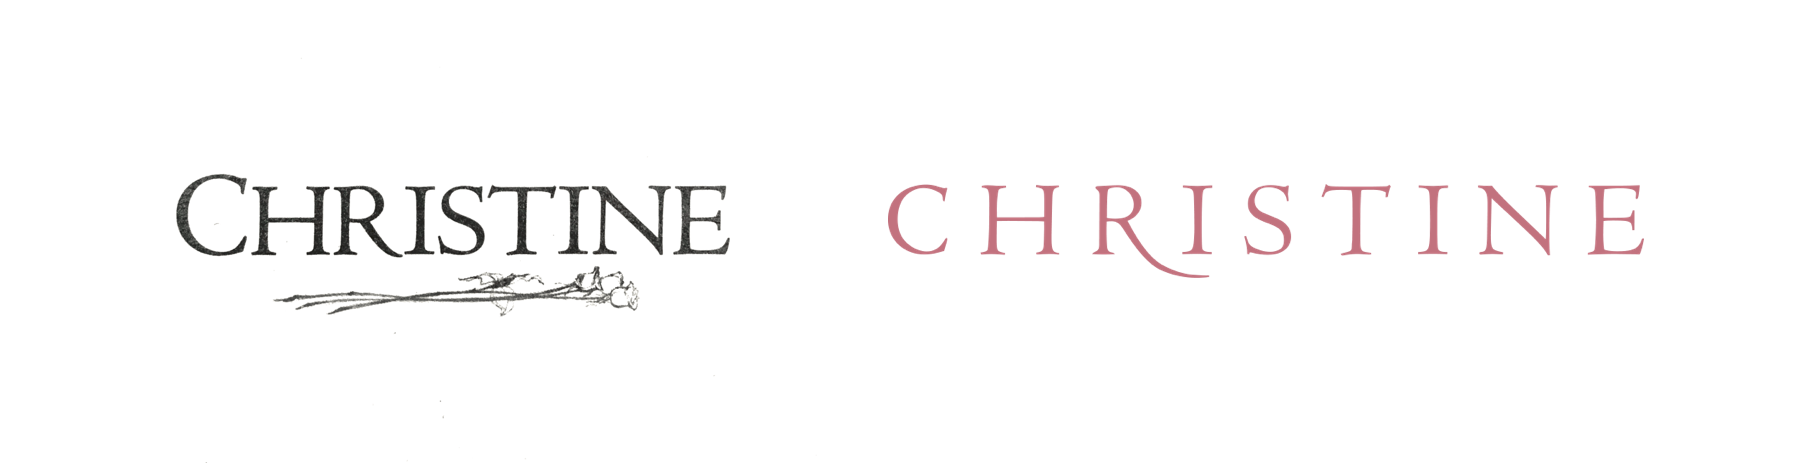 Christine Lingerie_Old_New_Logo